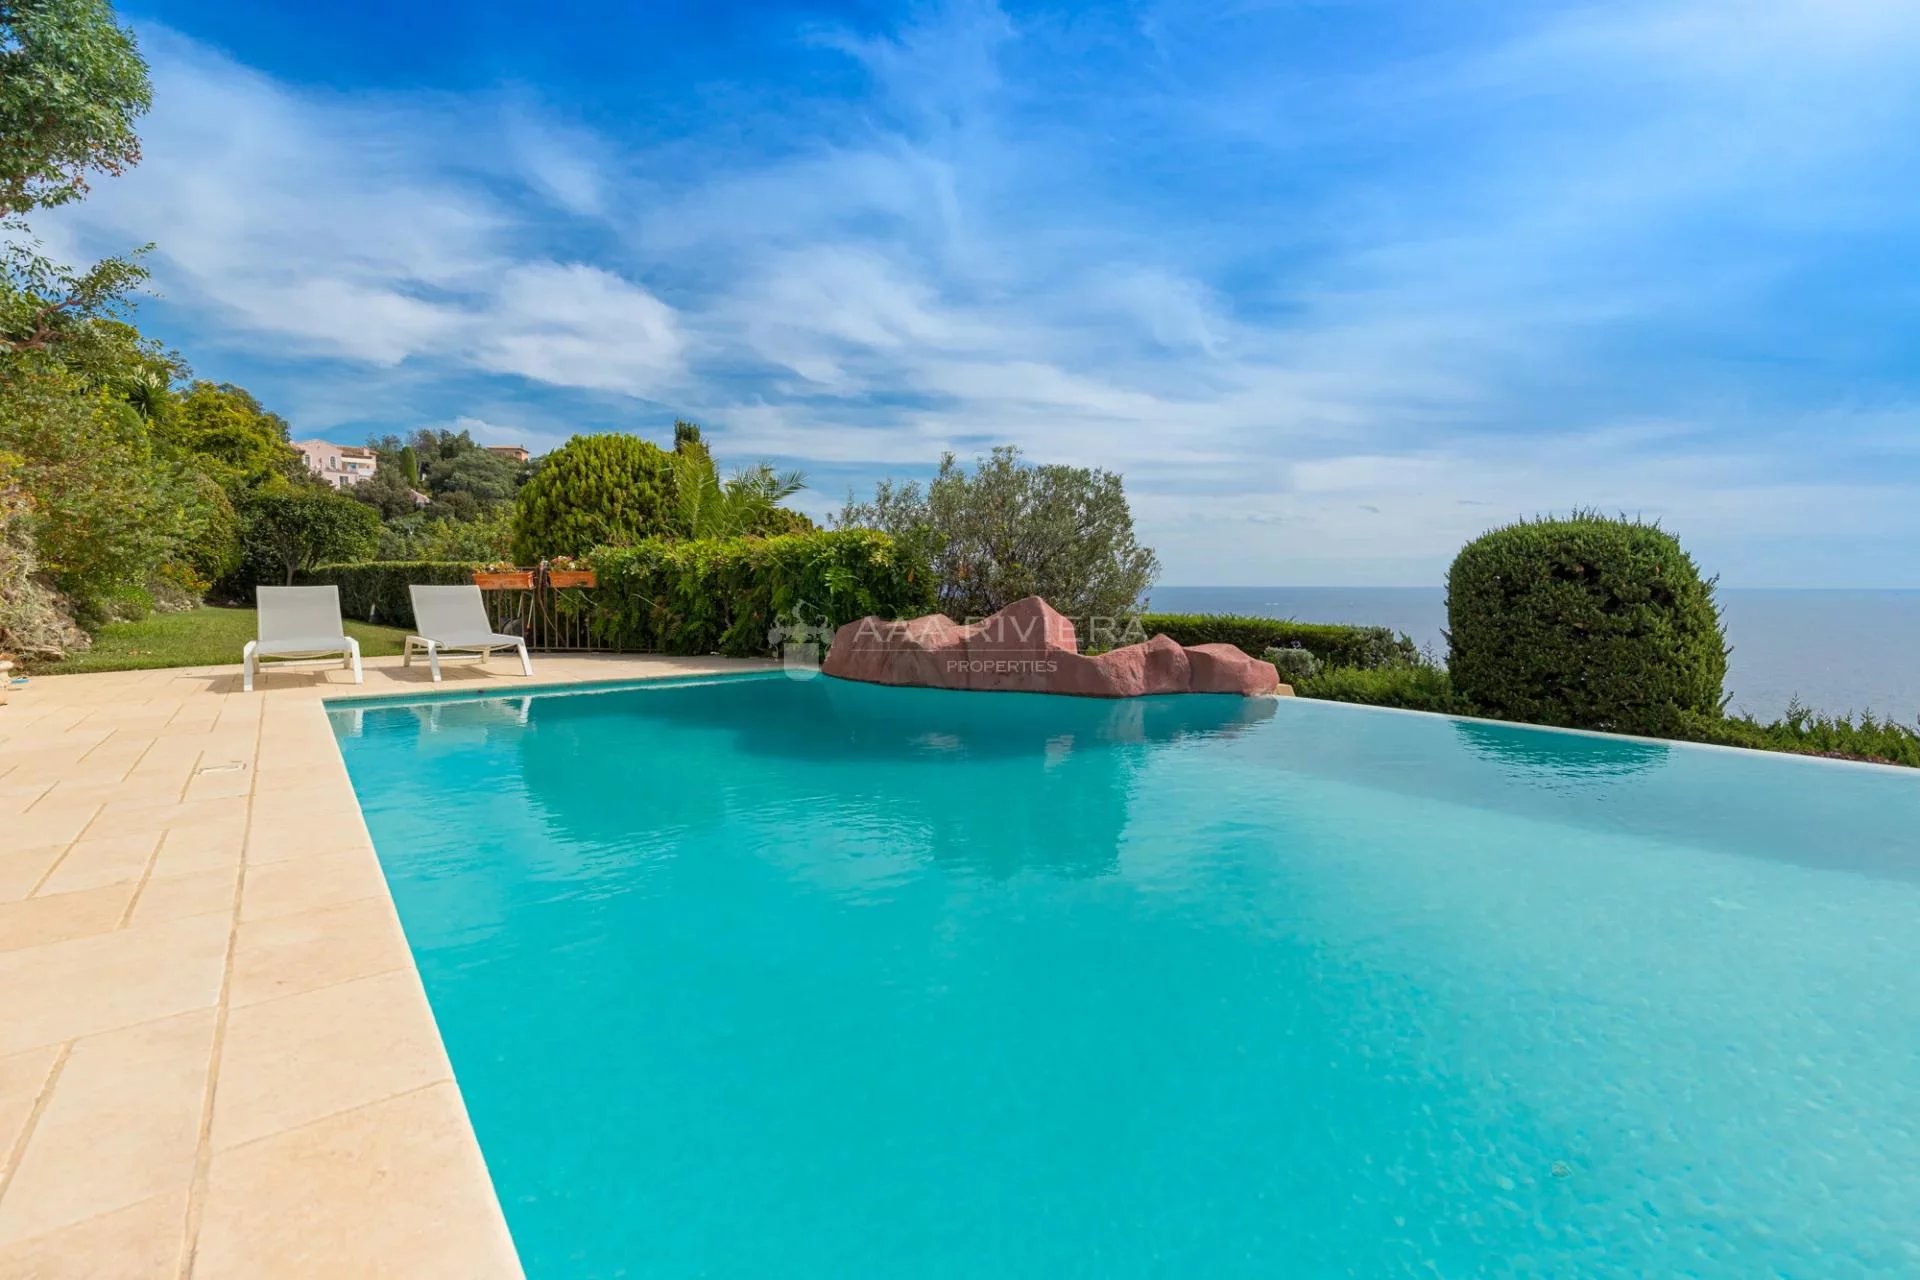 VENDUE - Théoule sur Mer - Magnifique villa avec piscine et vue panoramique sur la mer.